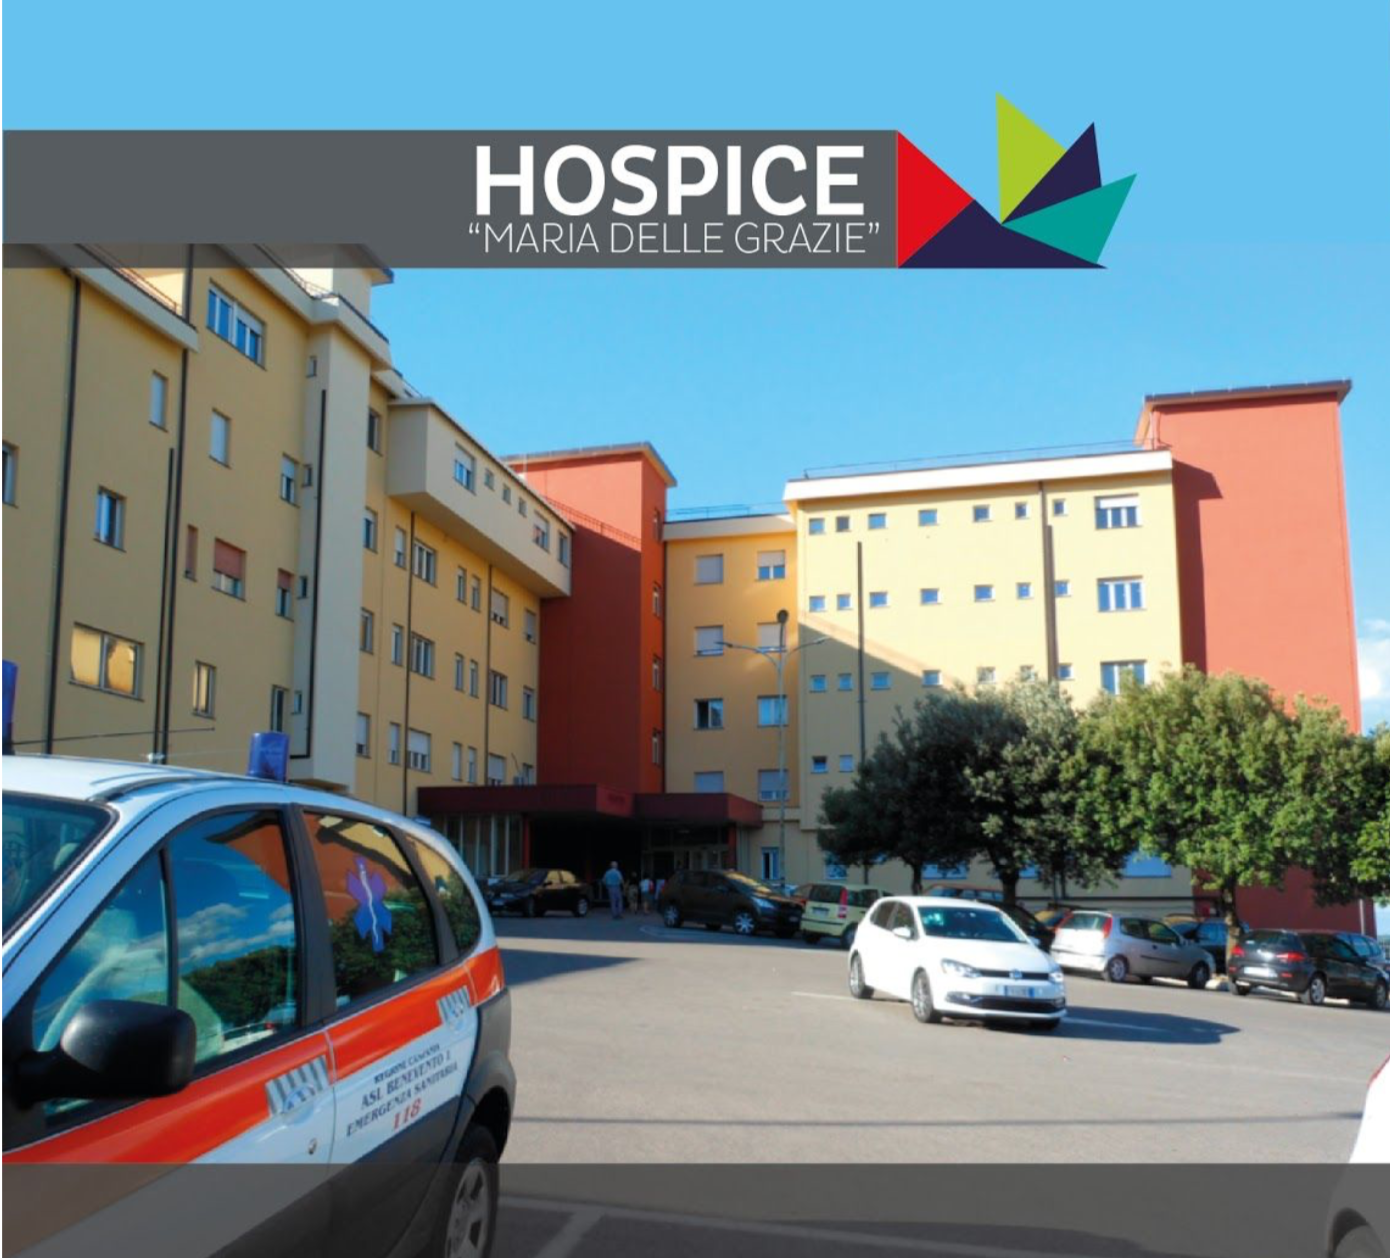 Ospedale di Cerreto Sannita, Volpe(ASL): “Riapertura frenata dalla pandemia, il personale impegnato a gestire l’enorme carico di lavoro”